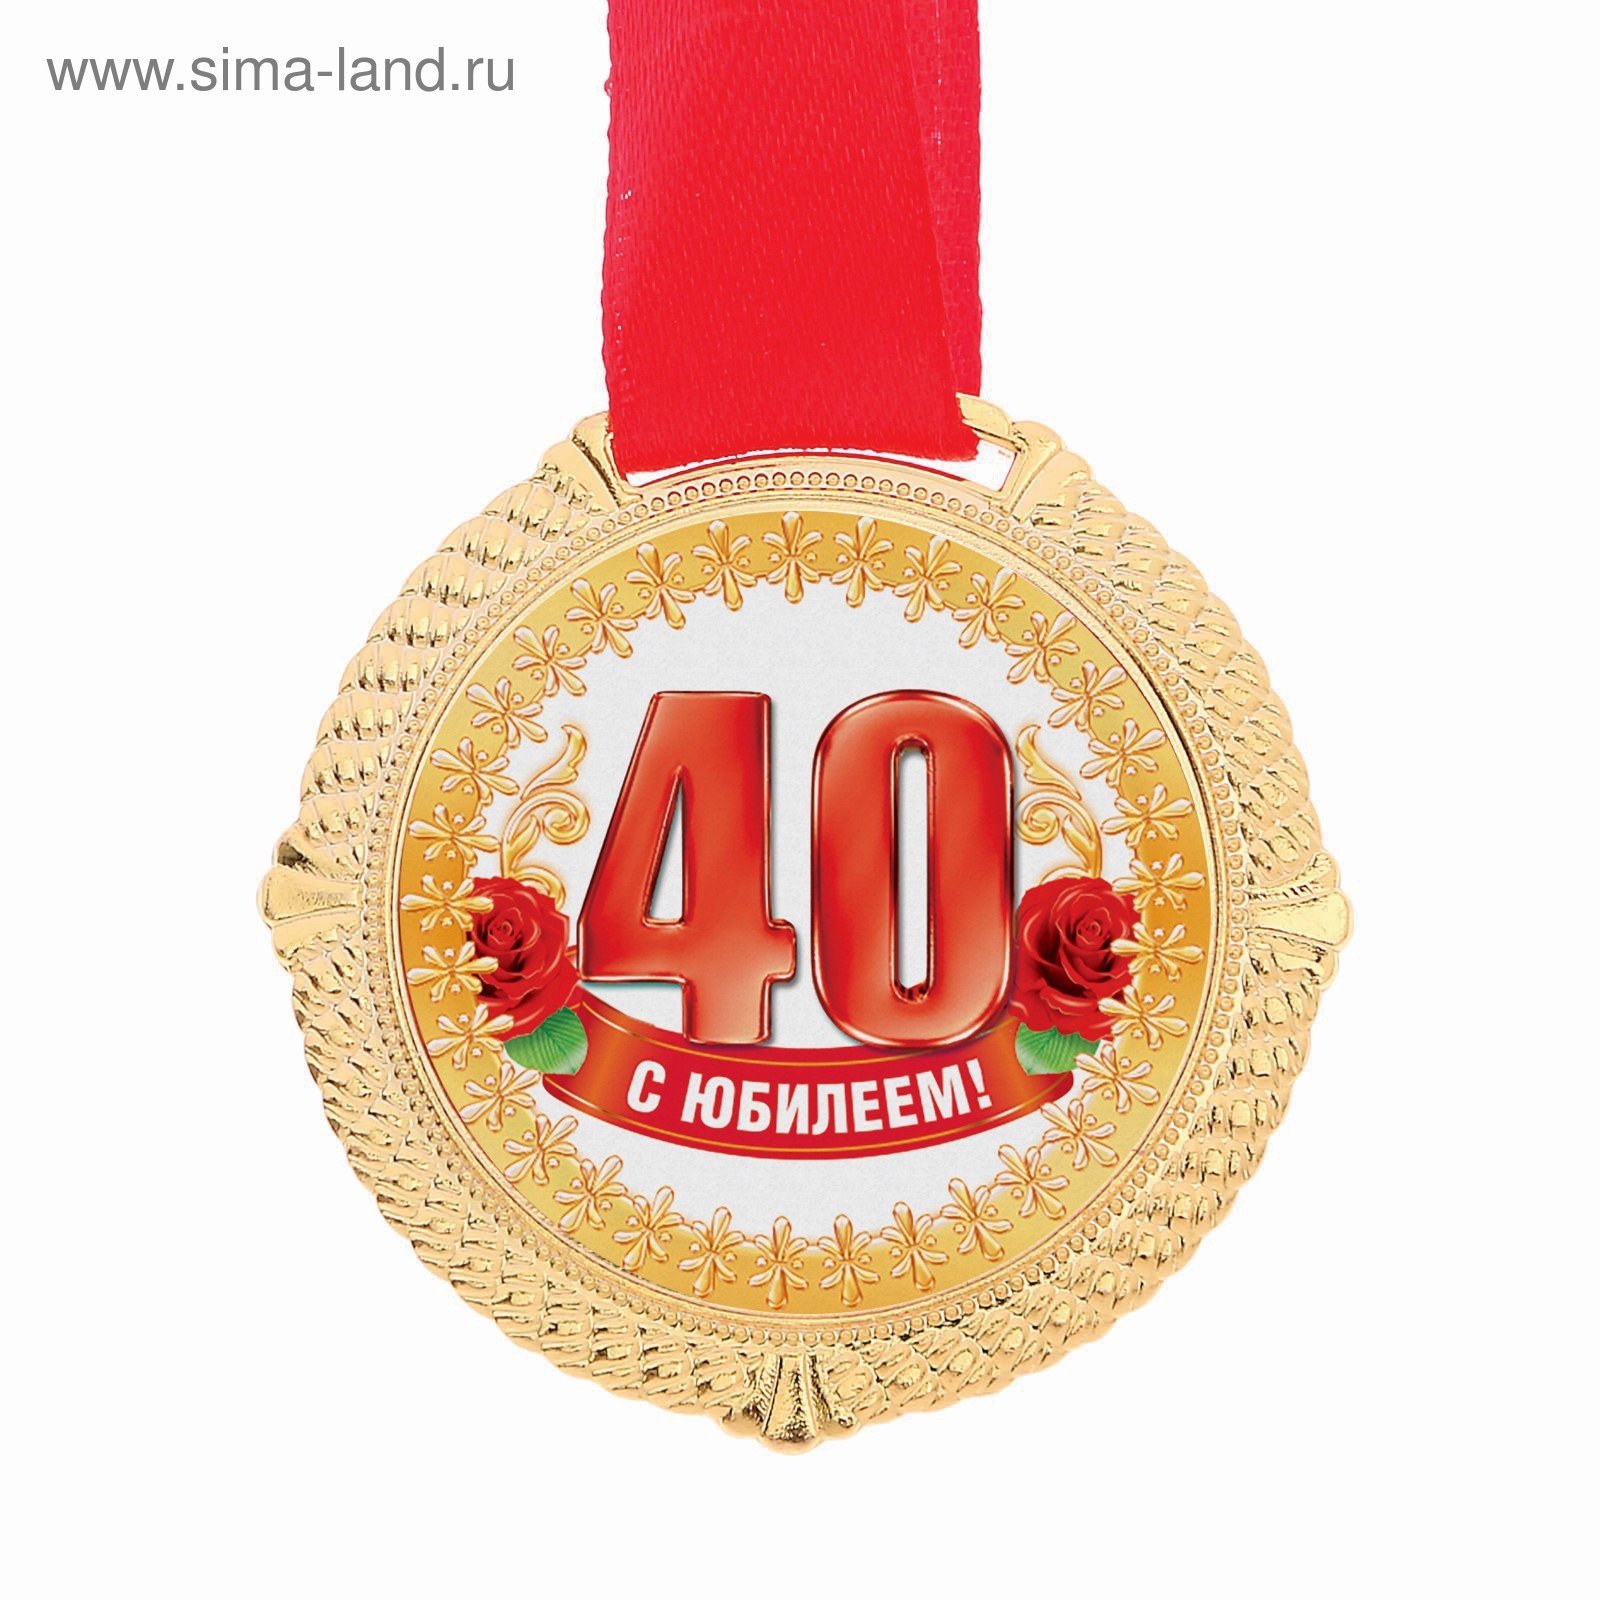 С юбилеем 40 летием. Медаль 40 лет юбилей. Медаль к 40 летнему юбилею. С юбилеем 40 лет. Поздравления с днём рождения 40 лет.